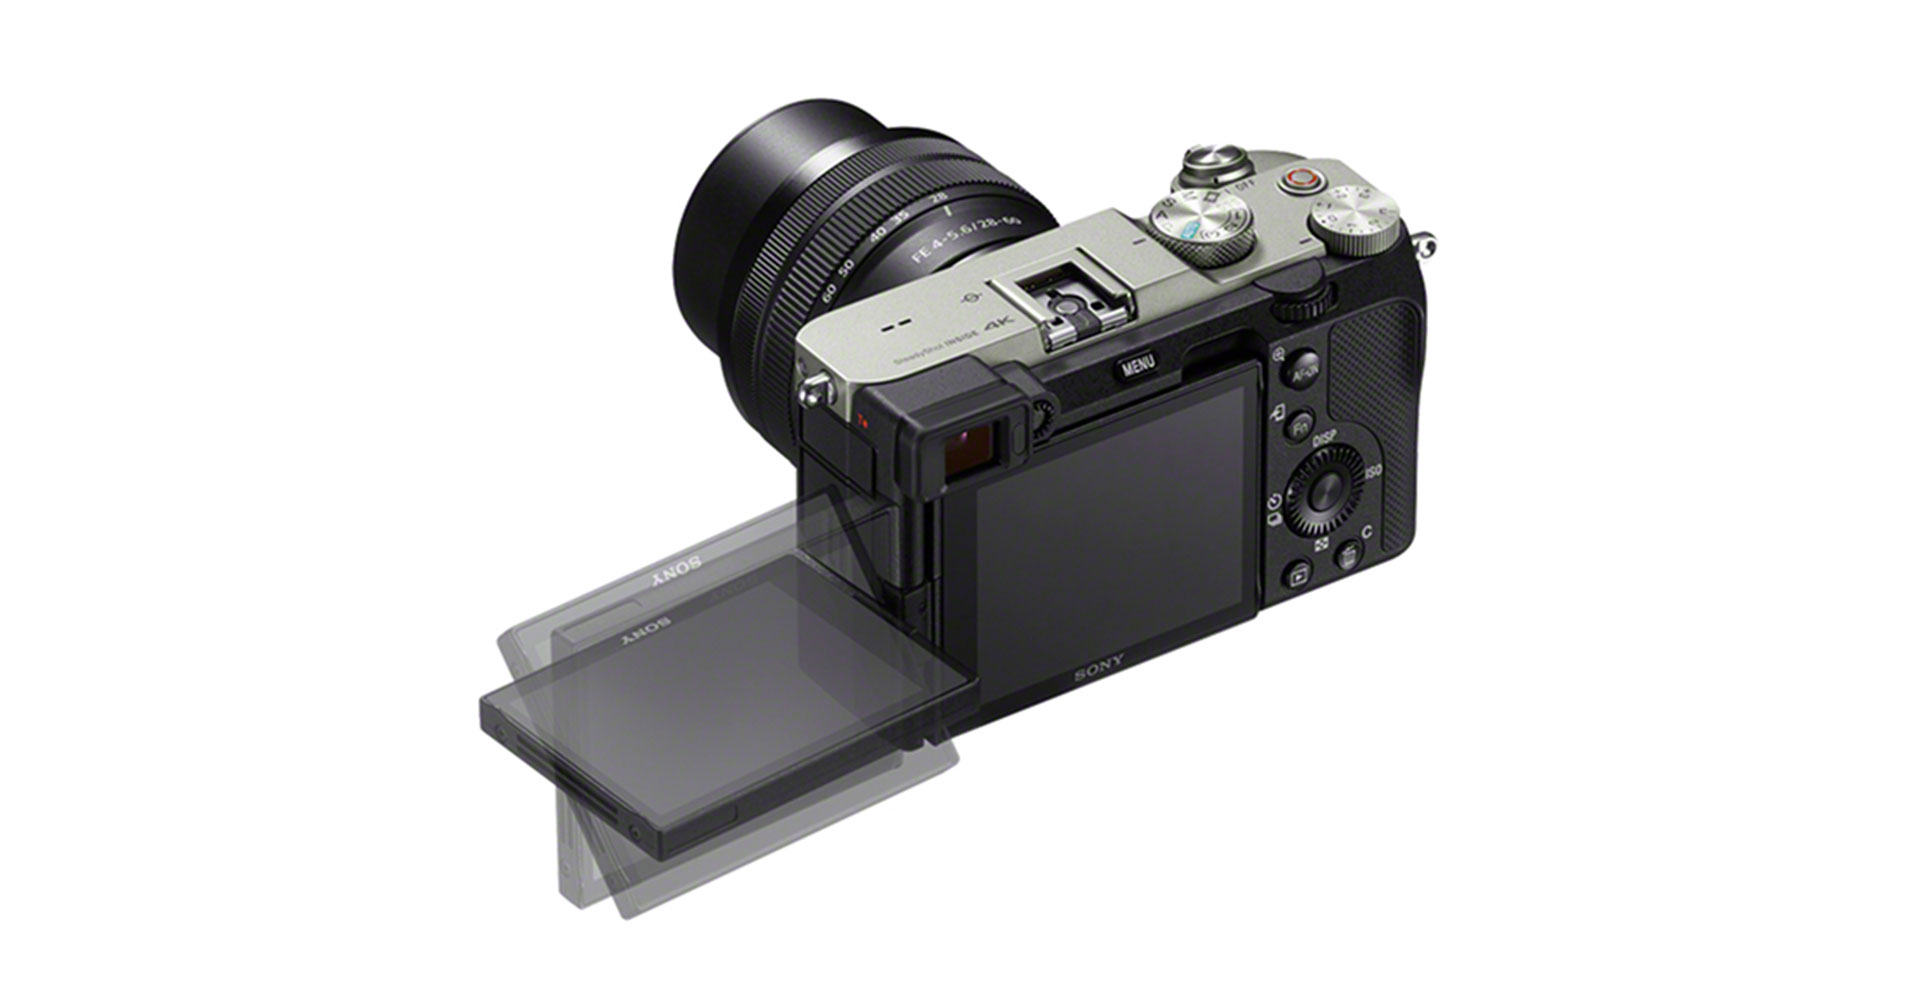 ข่าวลือ Sony A6700 กล้องมิเรอร์เลส APS-C รุ่นเรือธง ใช้สเปก และบอดีแบบ A7C ปรับปรุงระบบกันสั่น 5 แกน